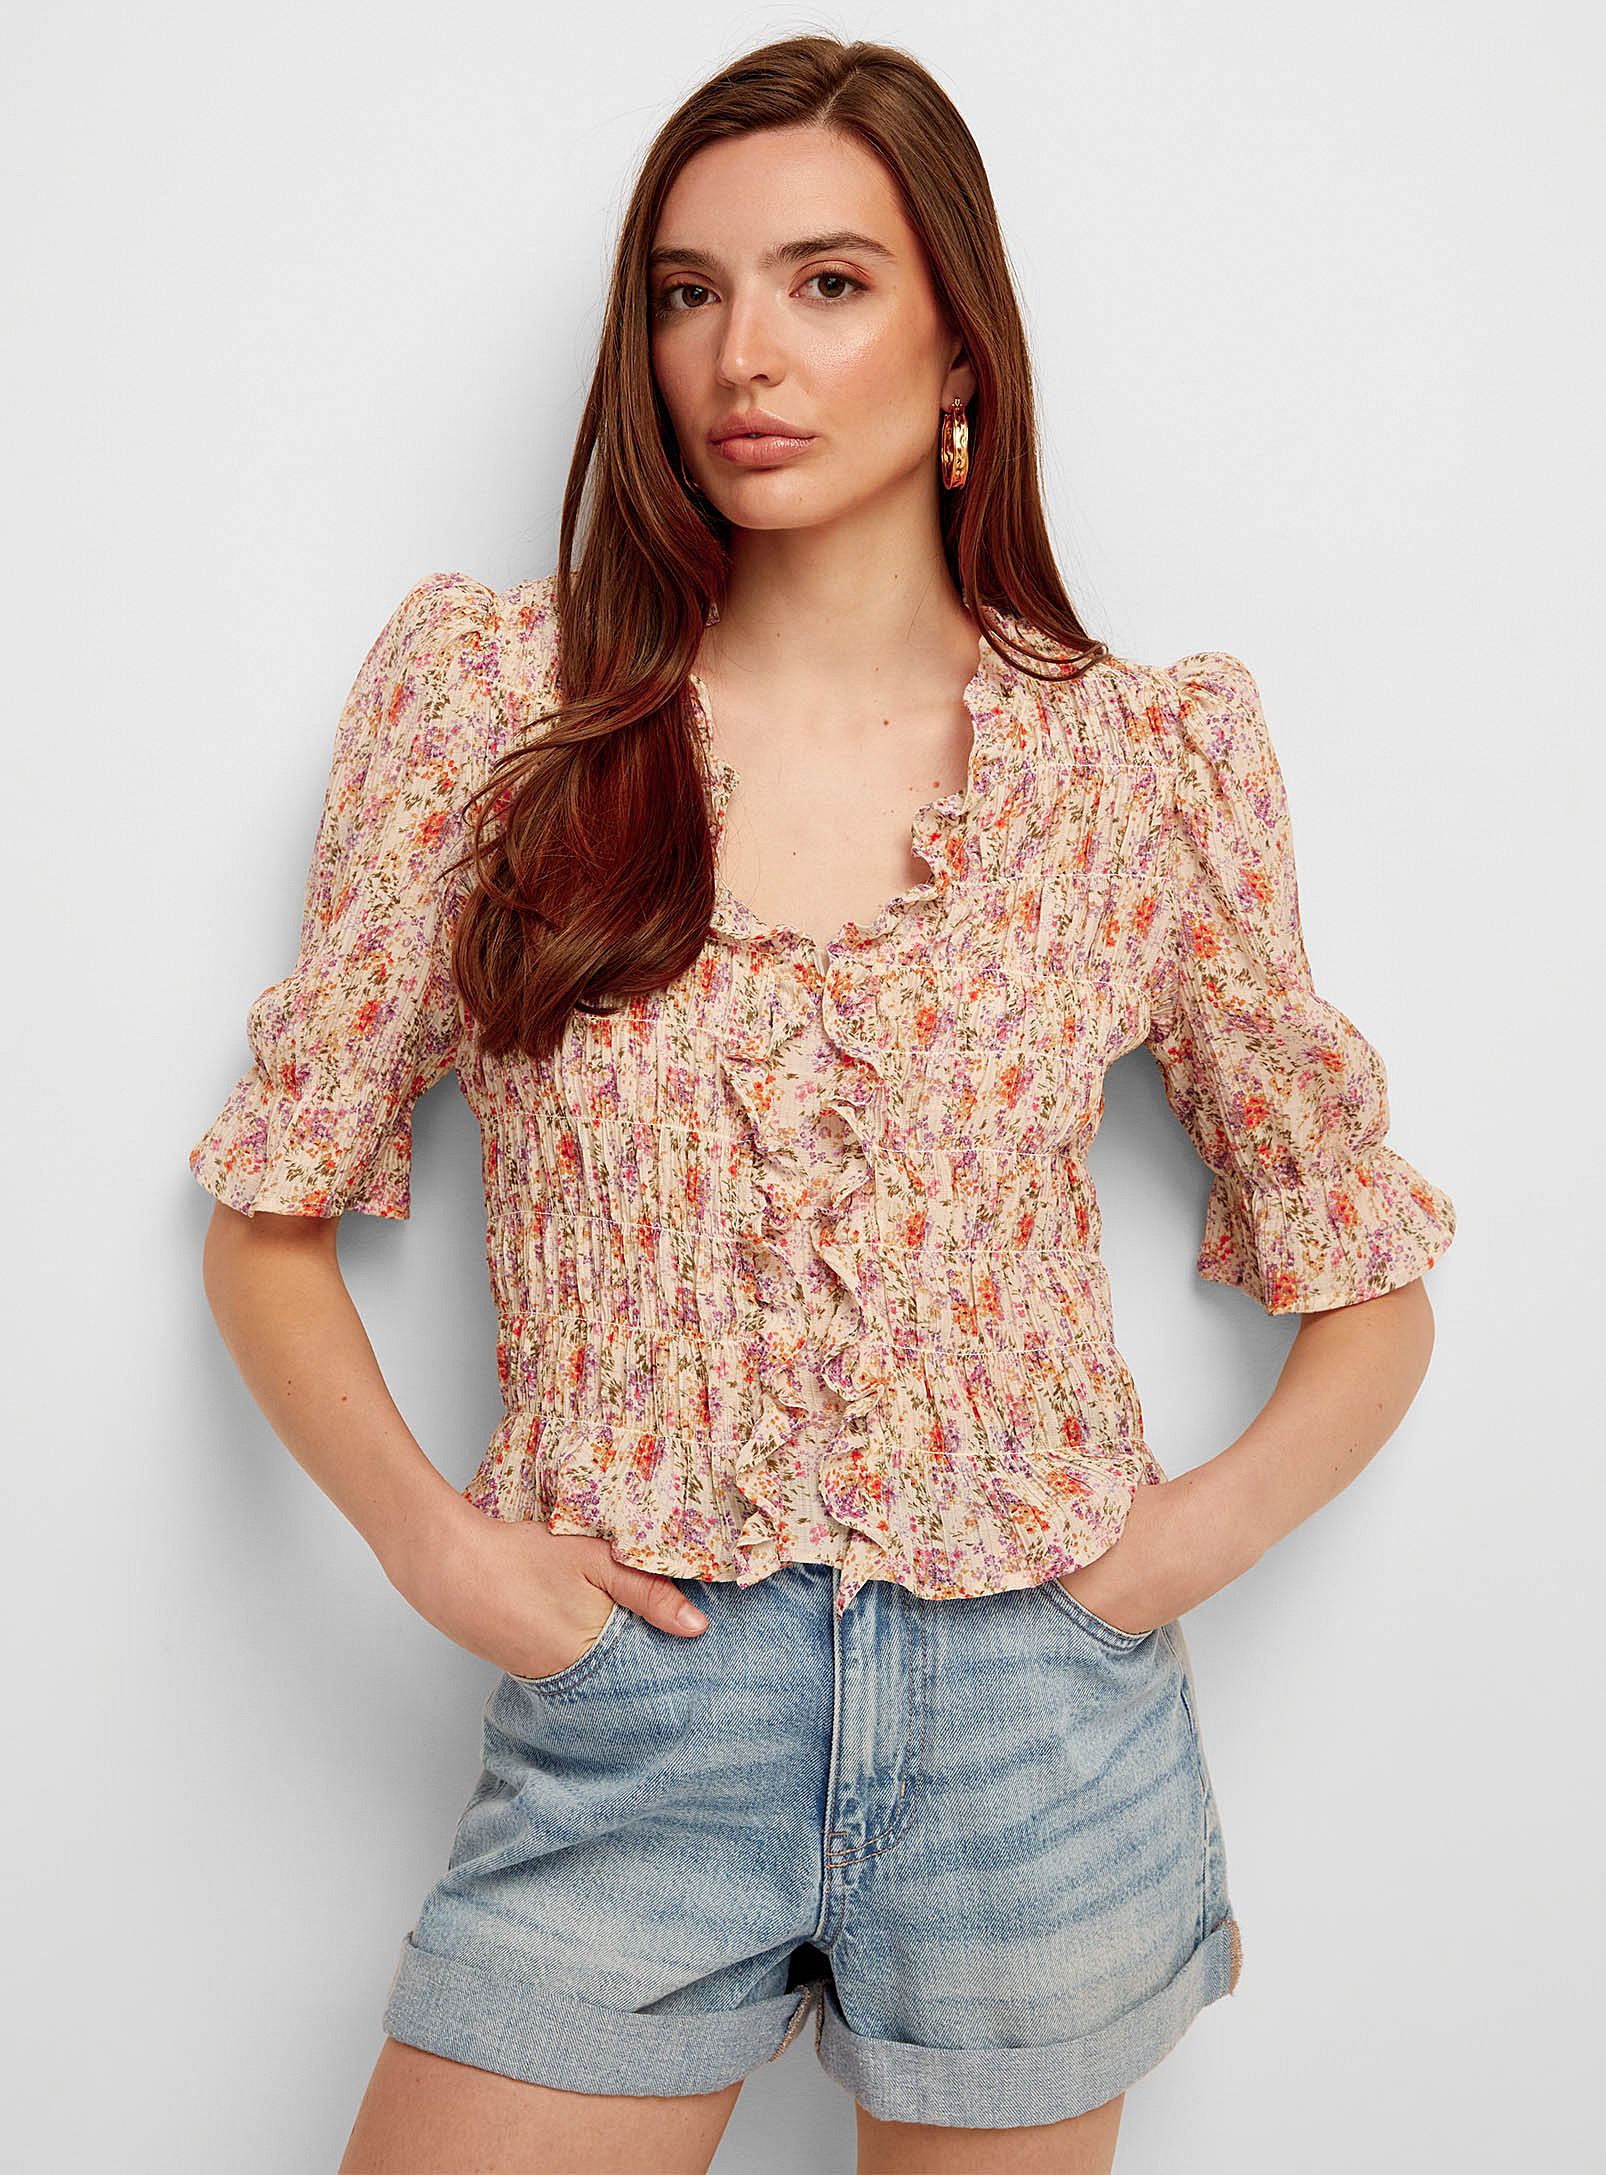 Vero Moda - Women's Elbow-sleeve mini-flowers crinkled blouse